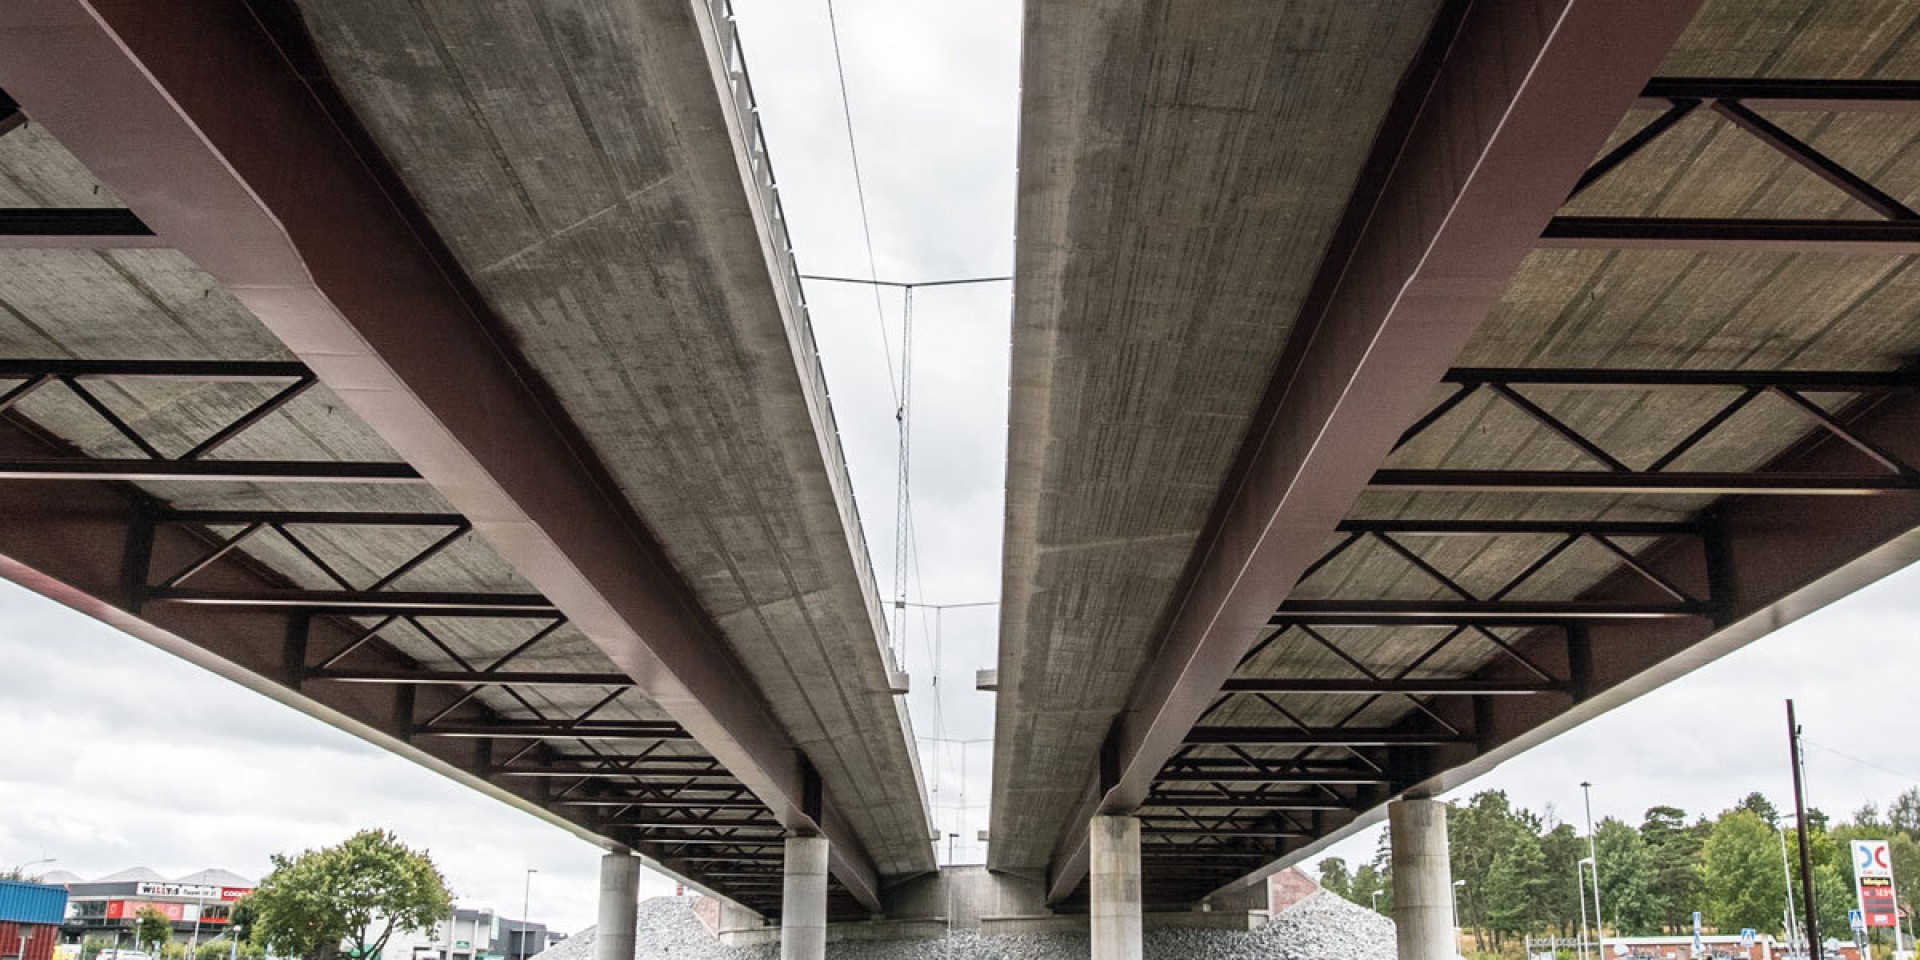 Rotebro tiltui – ilgalaikė apsauga nuo korozijos